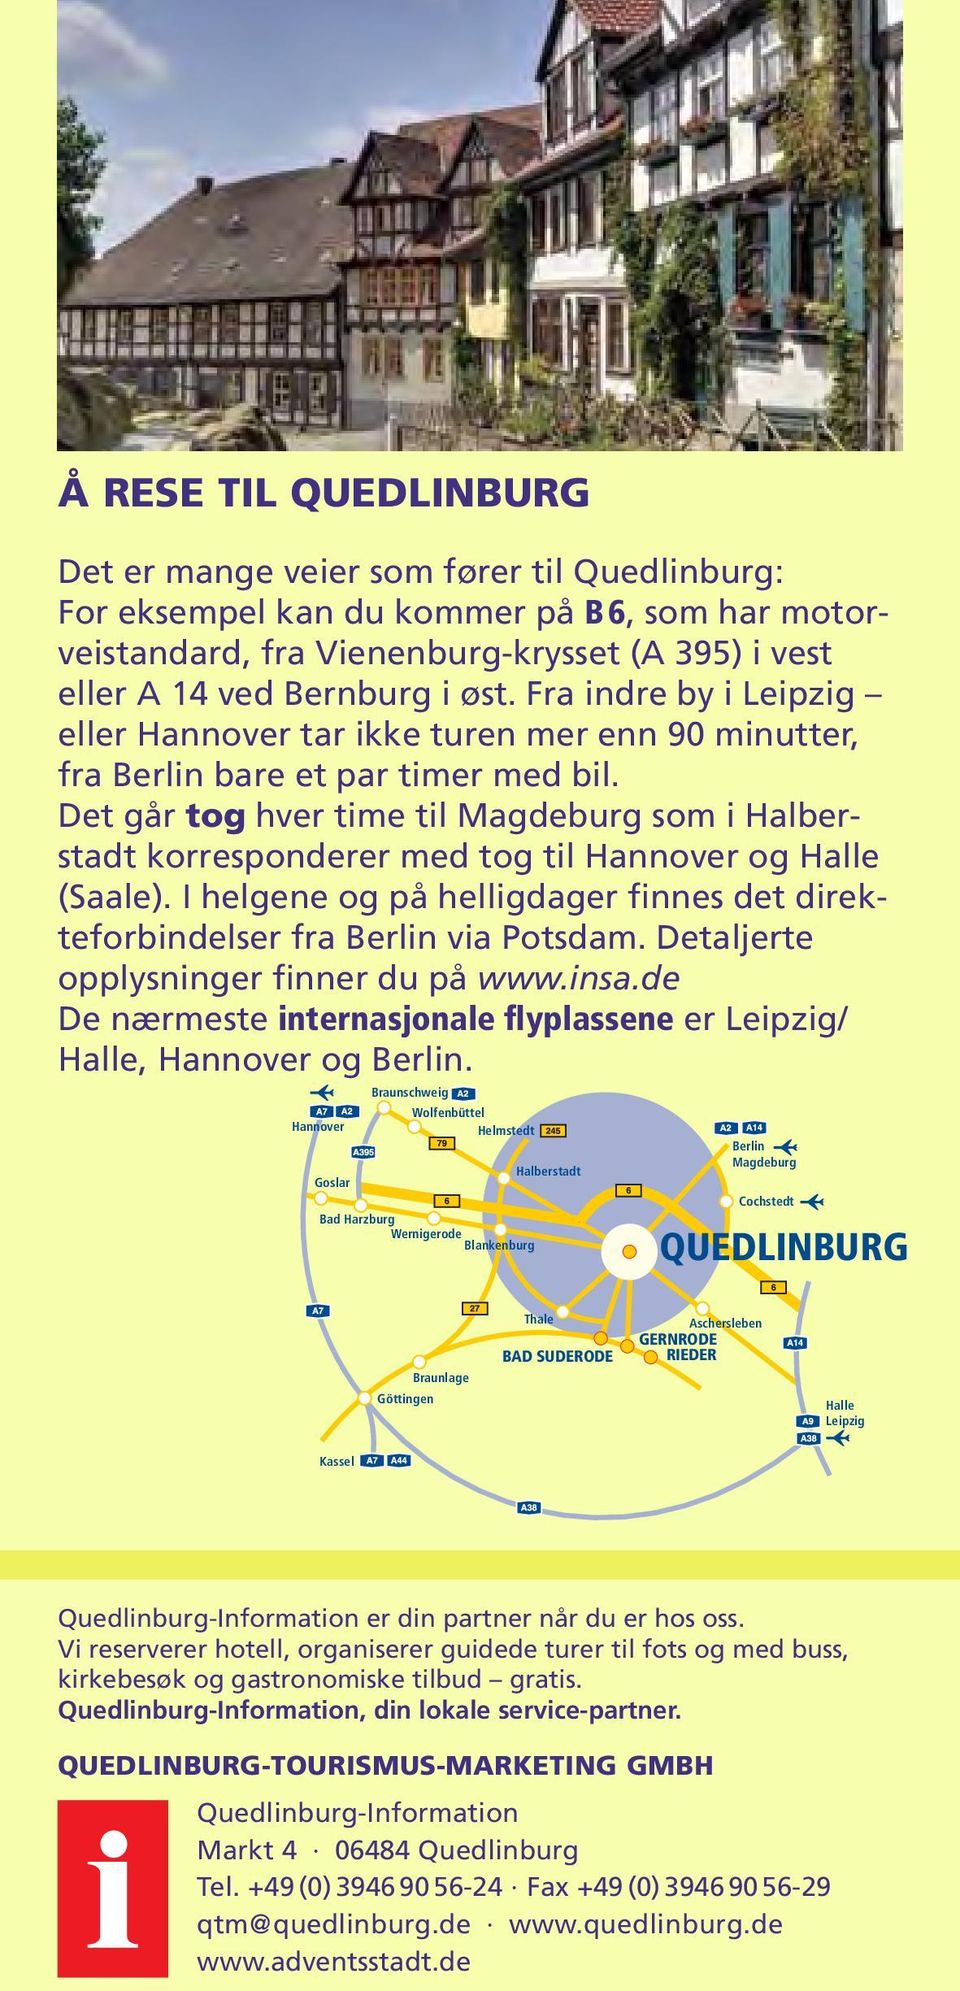 Det går tog hver time til Magdeburg som i Halberstadt korresponderer med tog til Hannover og Halle (Saale). I helgene og på helligdager finnes det direkteforbindelser fra Berlin via Potsdam.